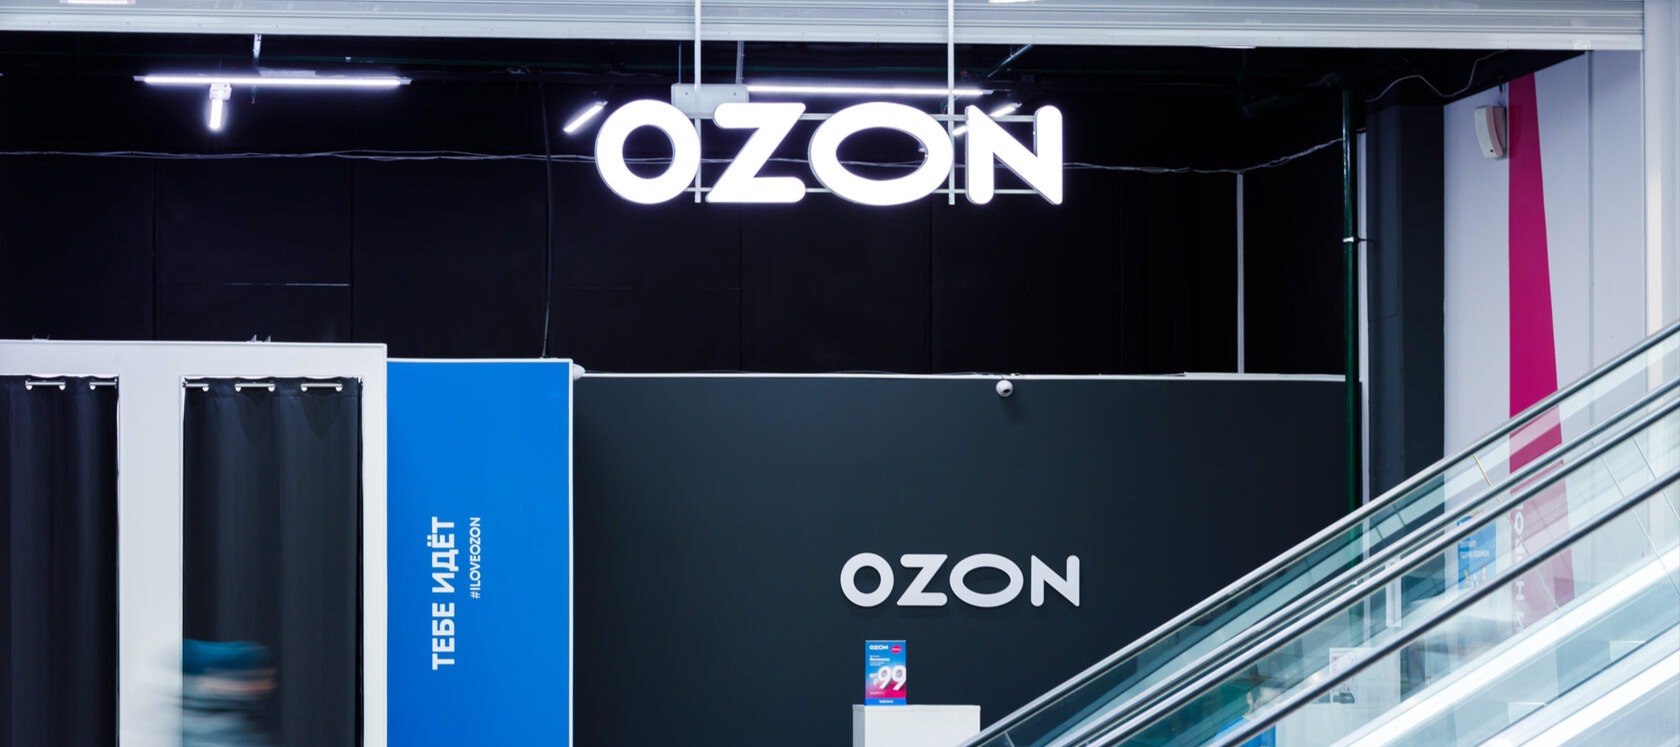 Фото новости: "Ozon даст продавцам с подпиской доступ к аналитике ближайших кокурентов"